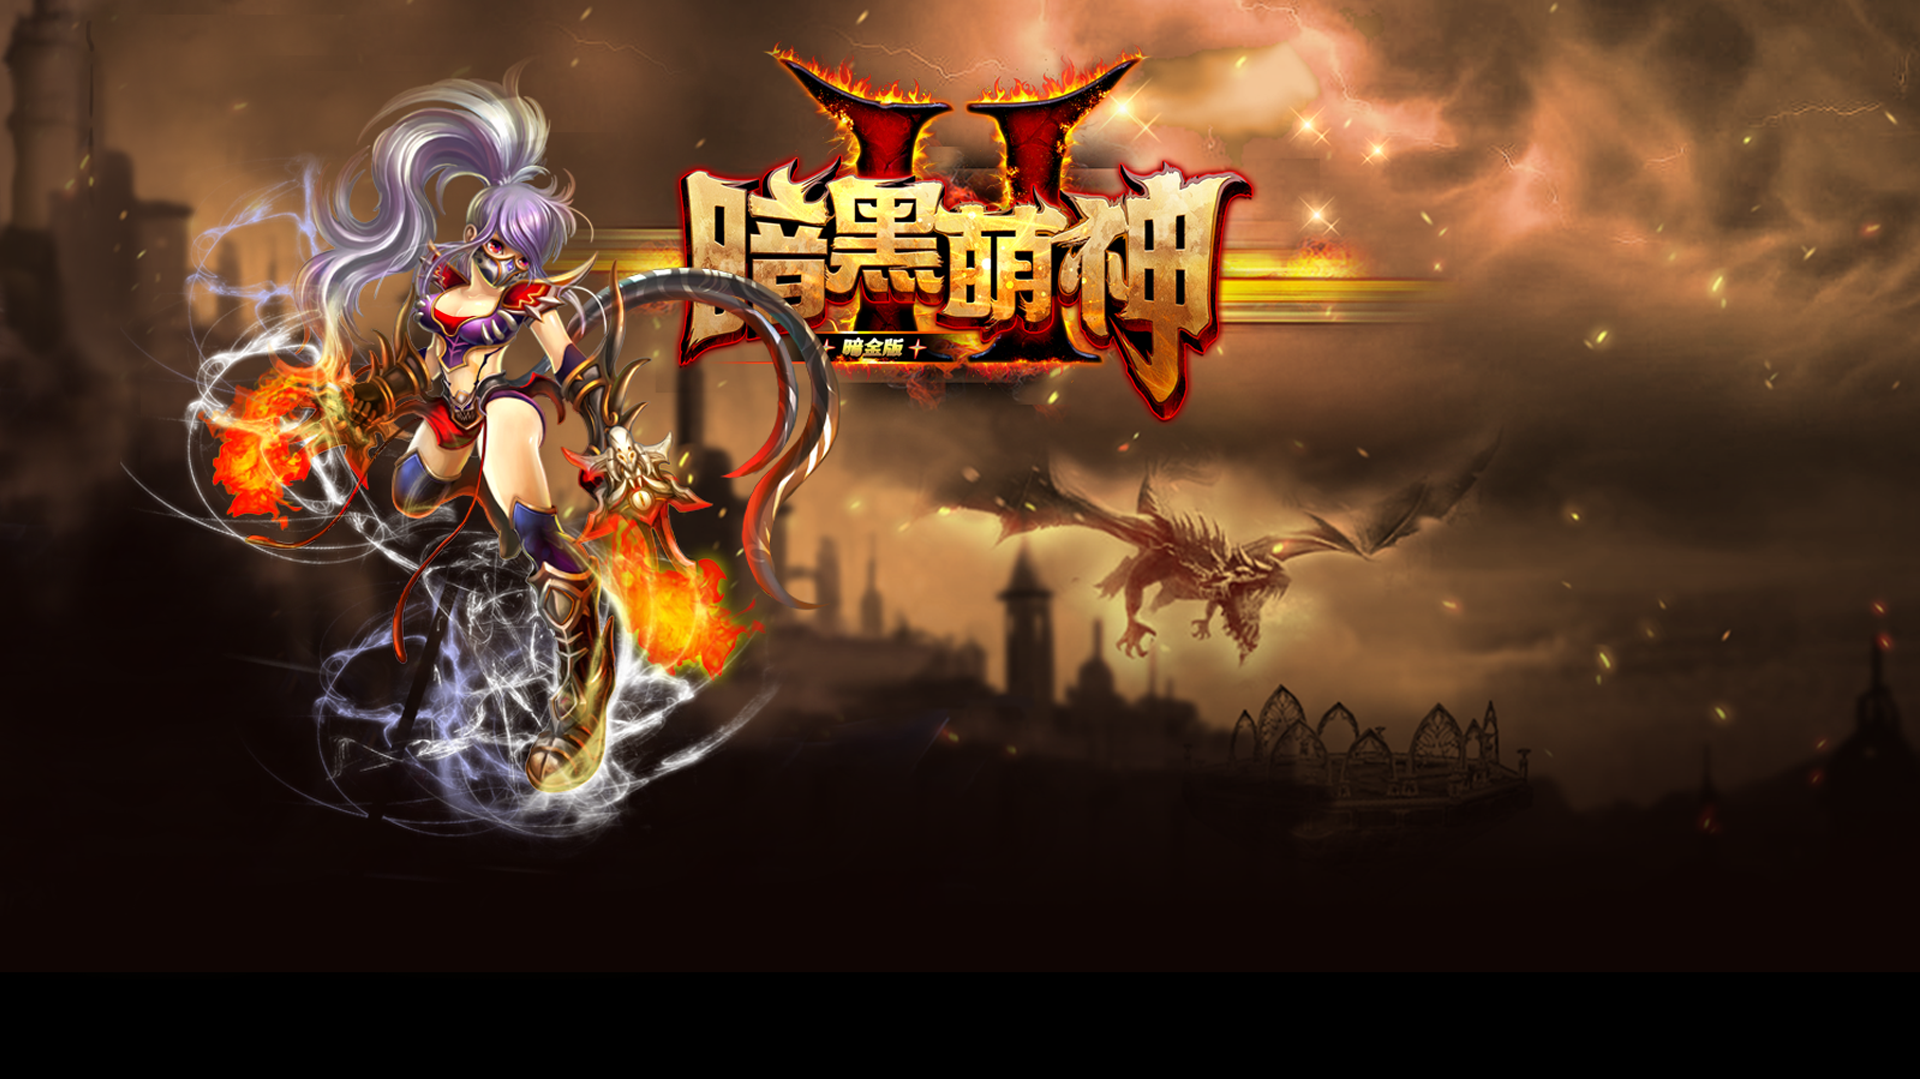 Banner of Edisi Emas Gelap dari "Darkness II Mengshen" 